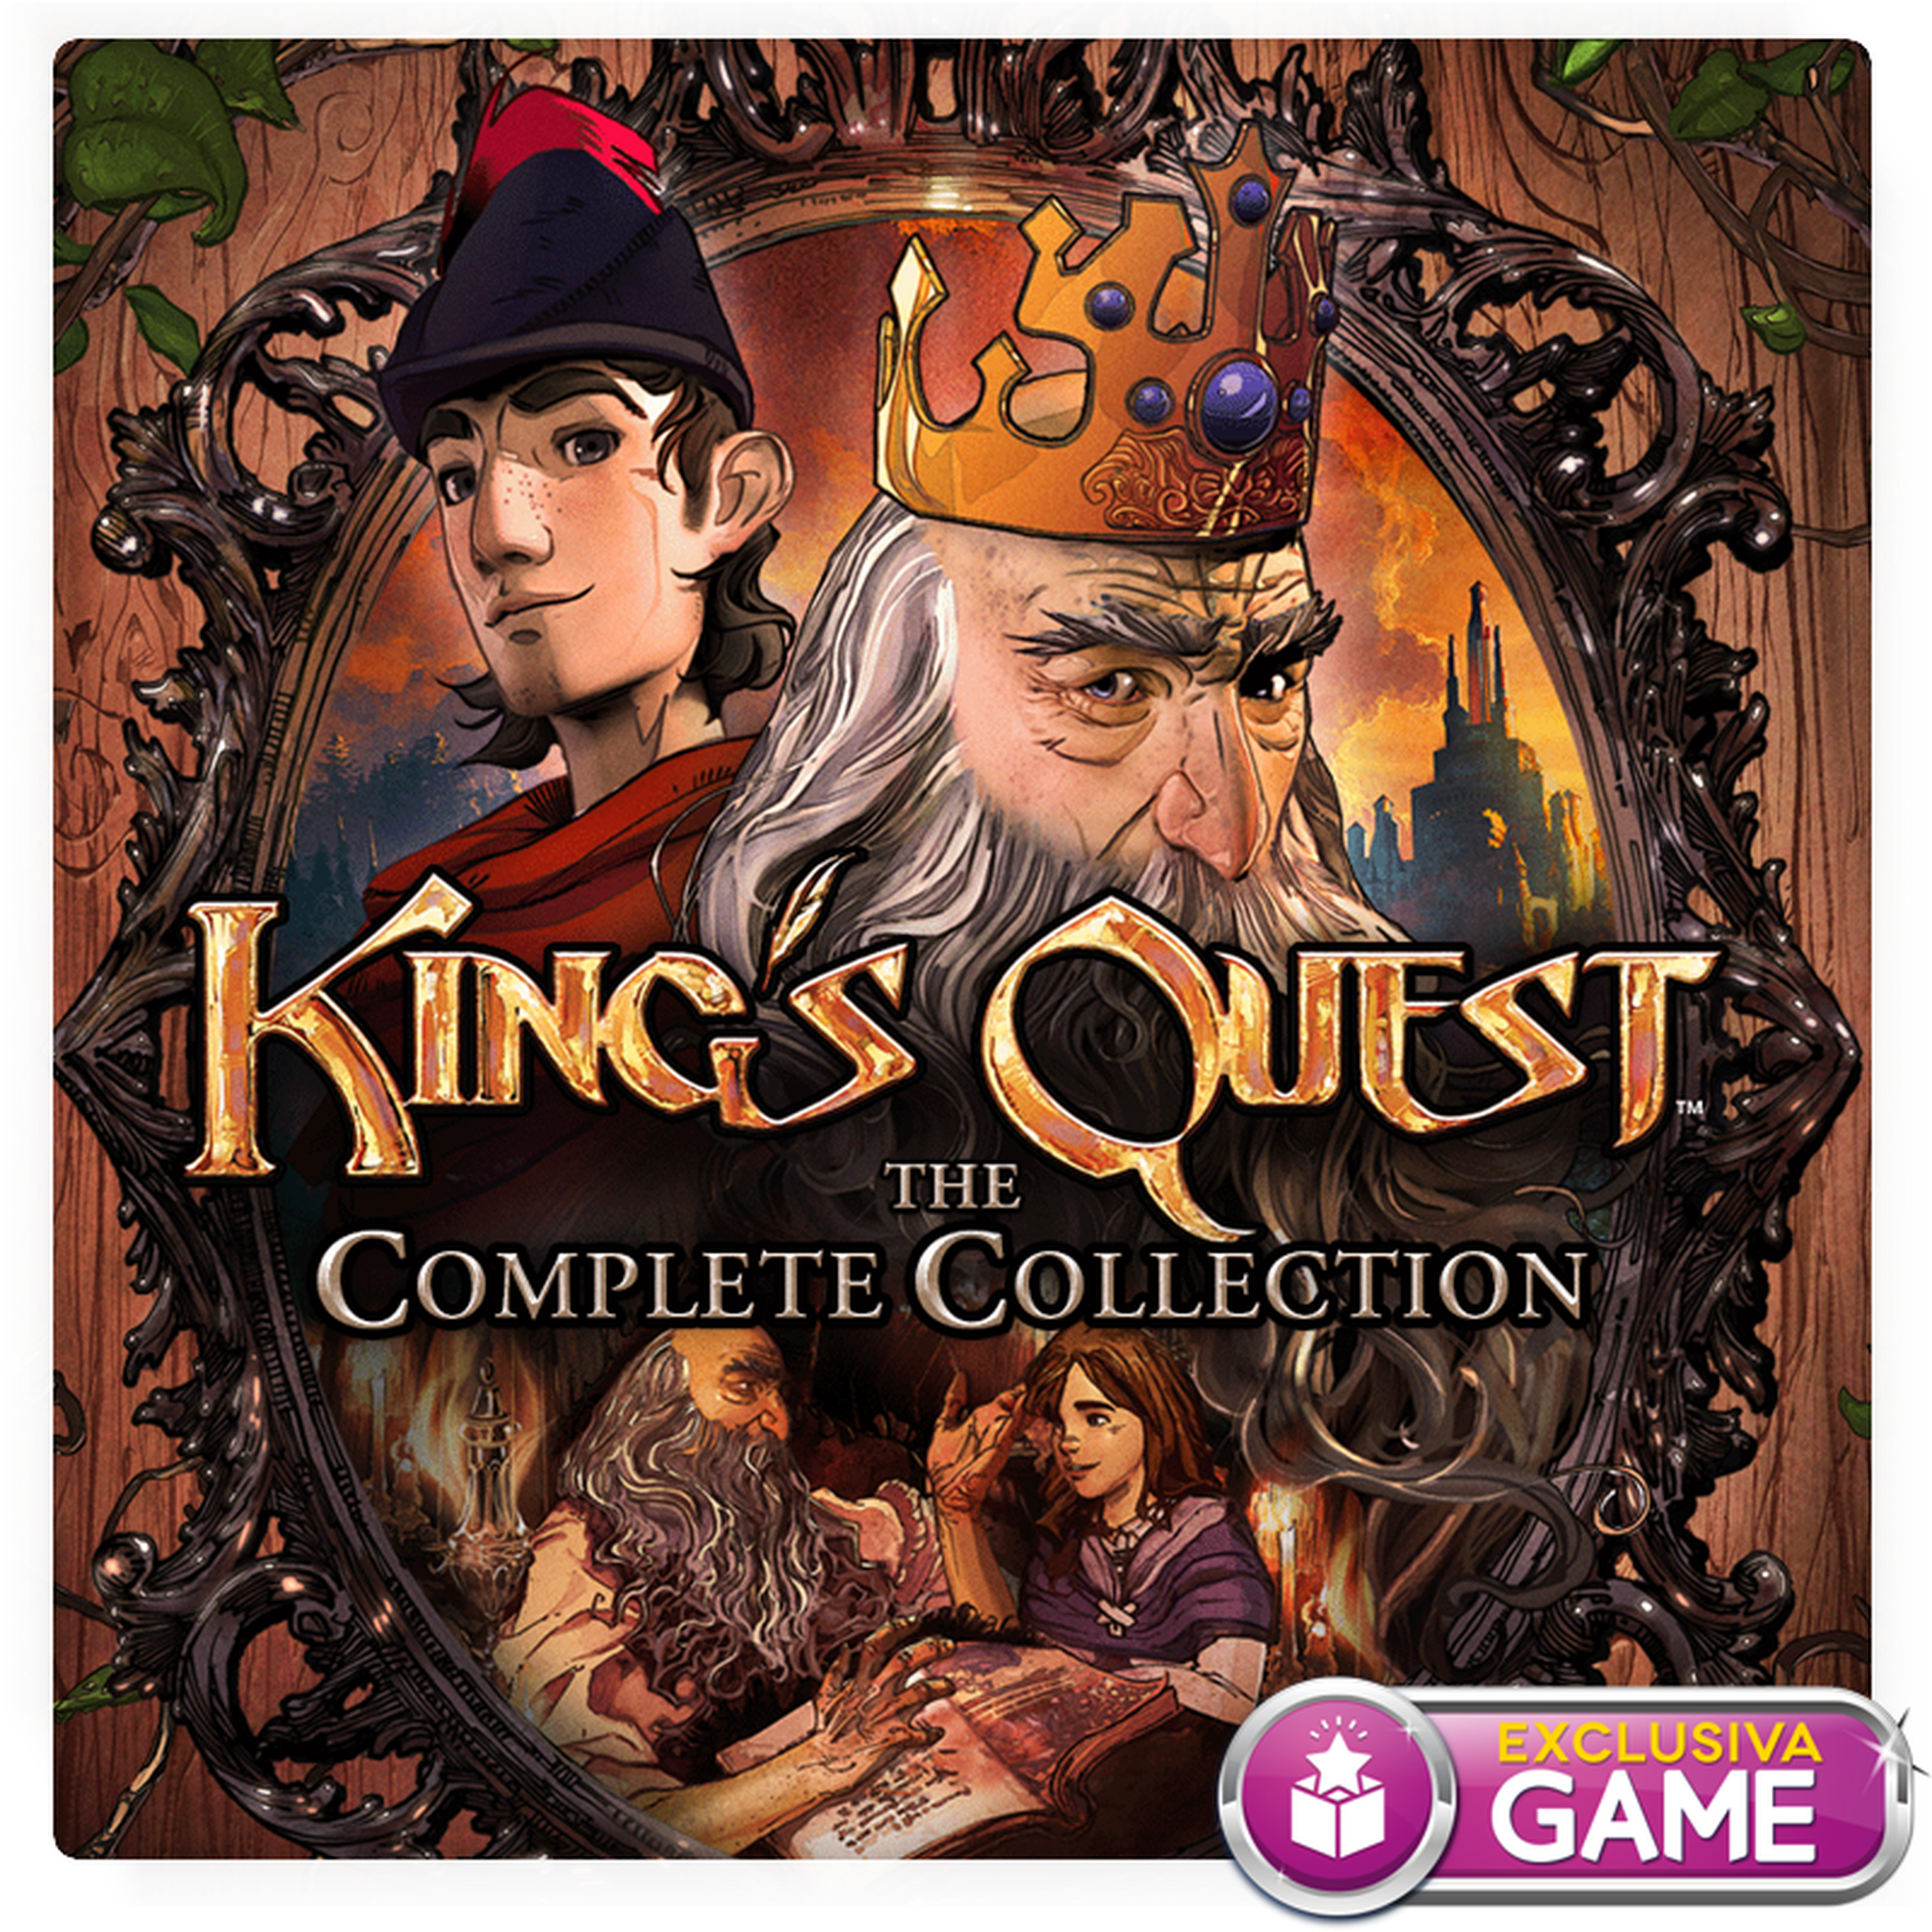 King's Quest para PS4 y PS3, disponible en GAME